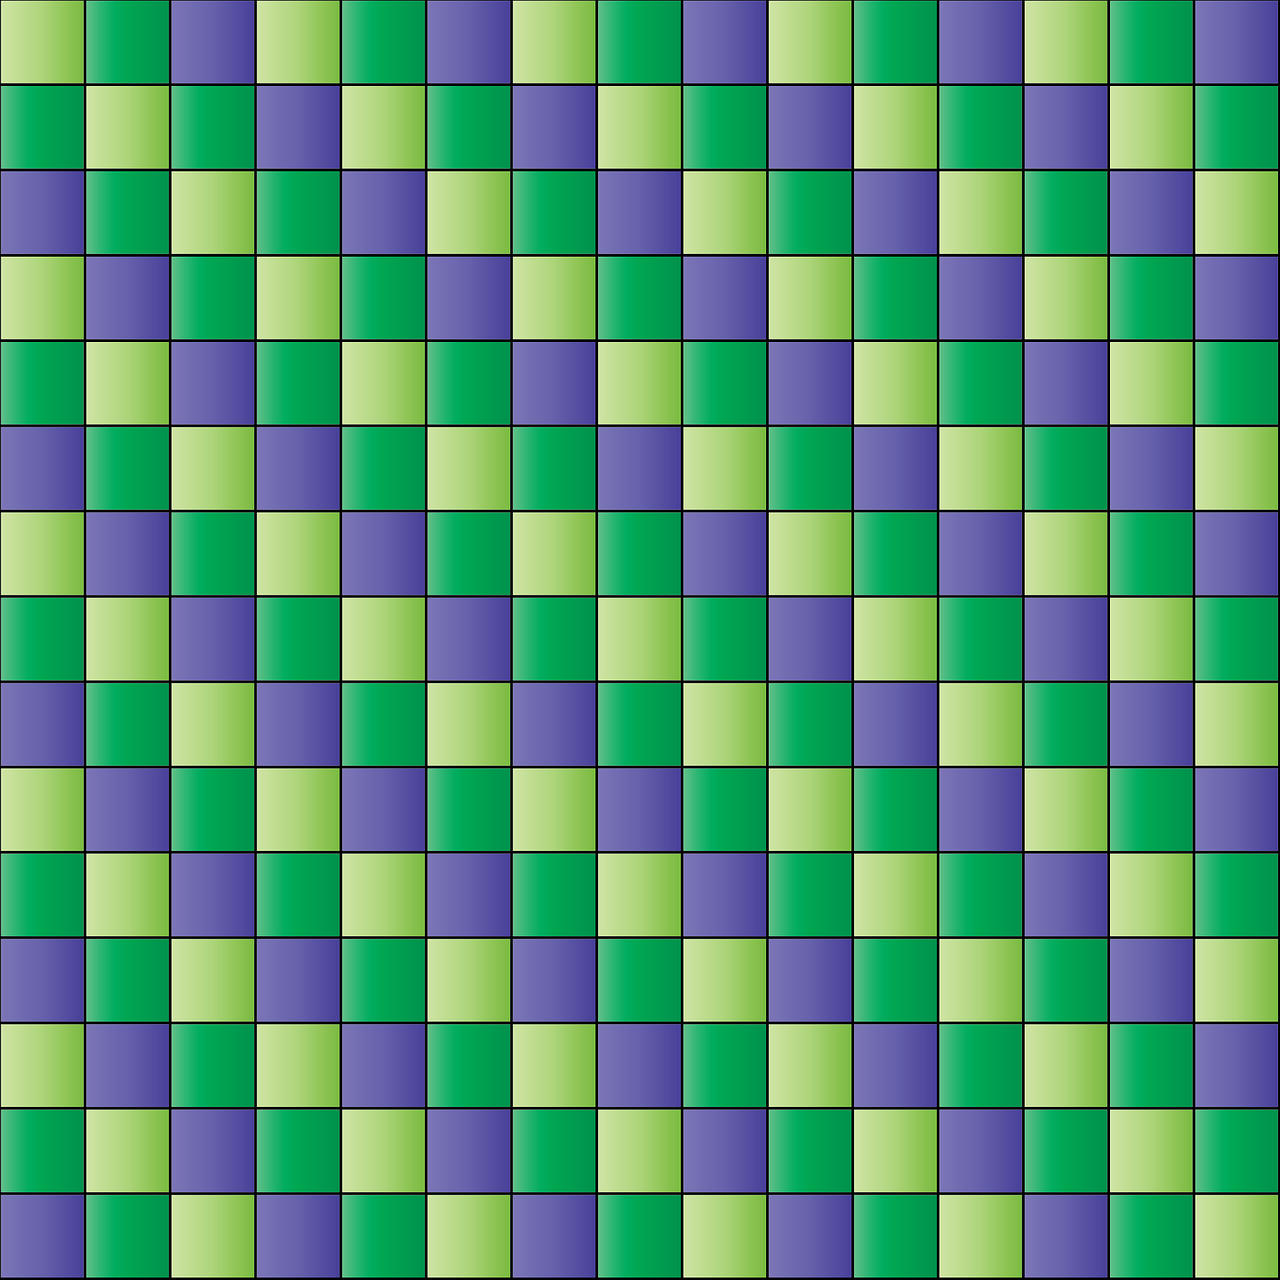 Квадратики. Фон квадраты. Изображение квадратиками. Красивые обои с квадратиками.